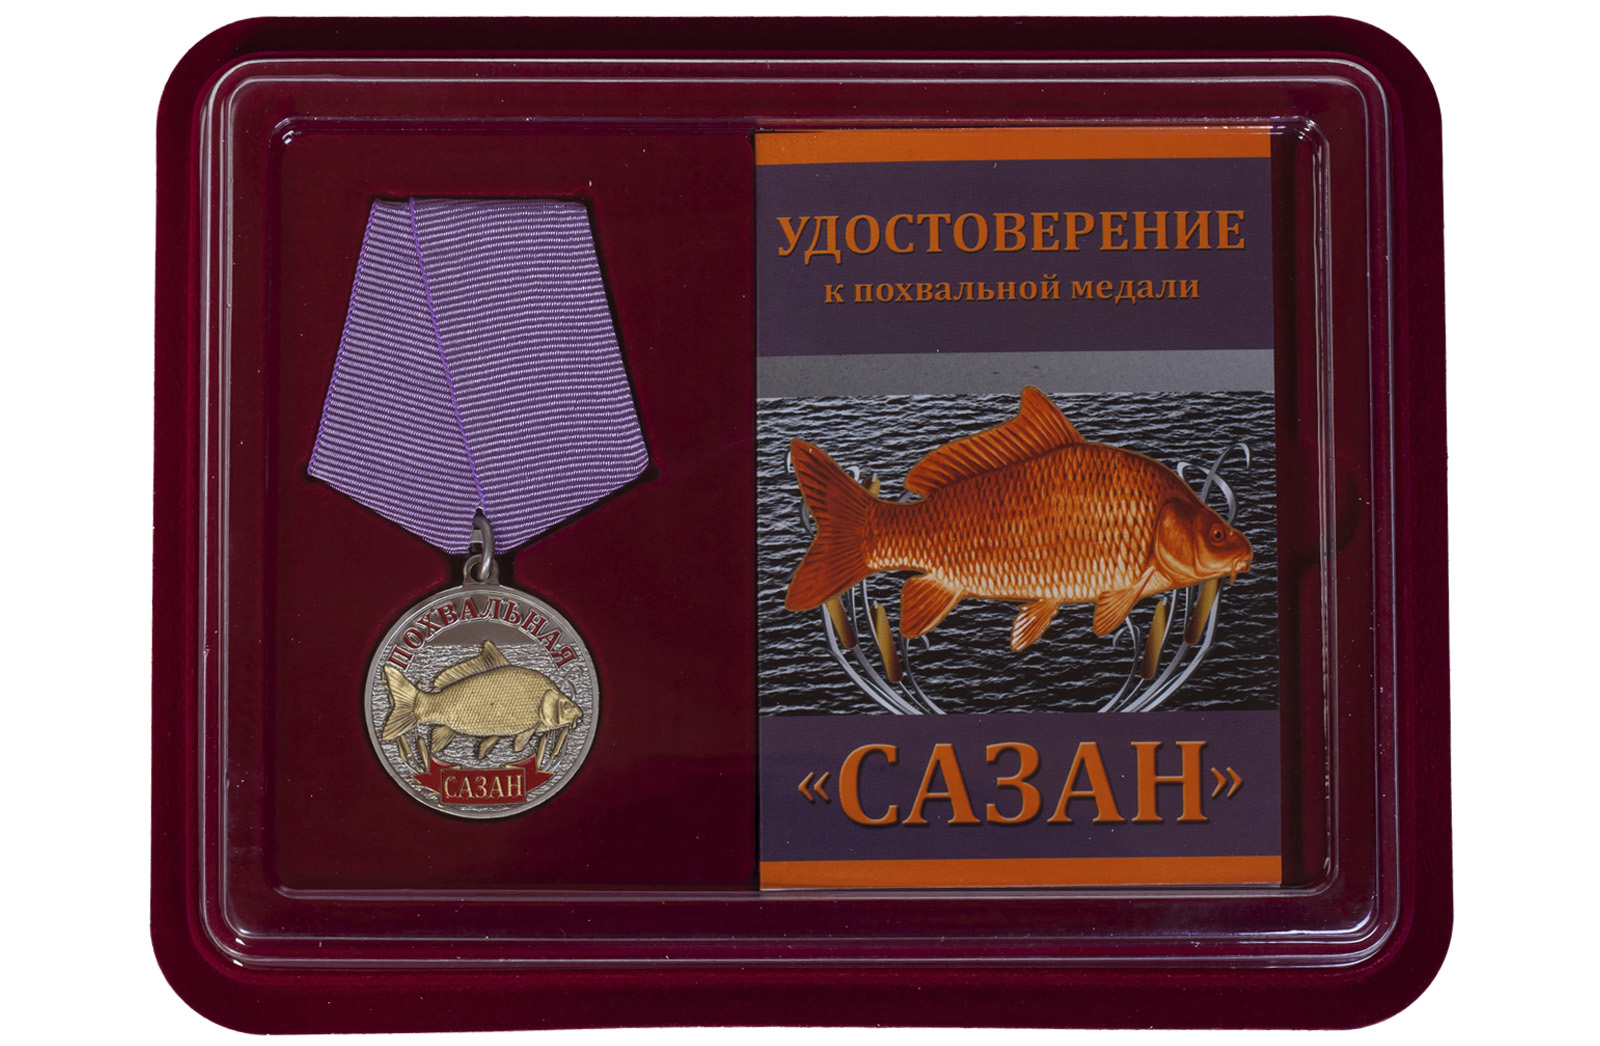 Купить похвальную медаль рыбаку Сазан оптом или в розницу